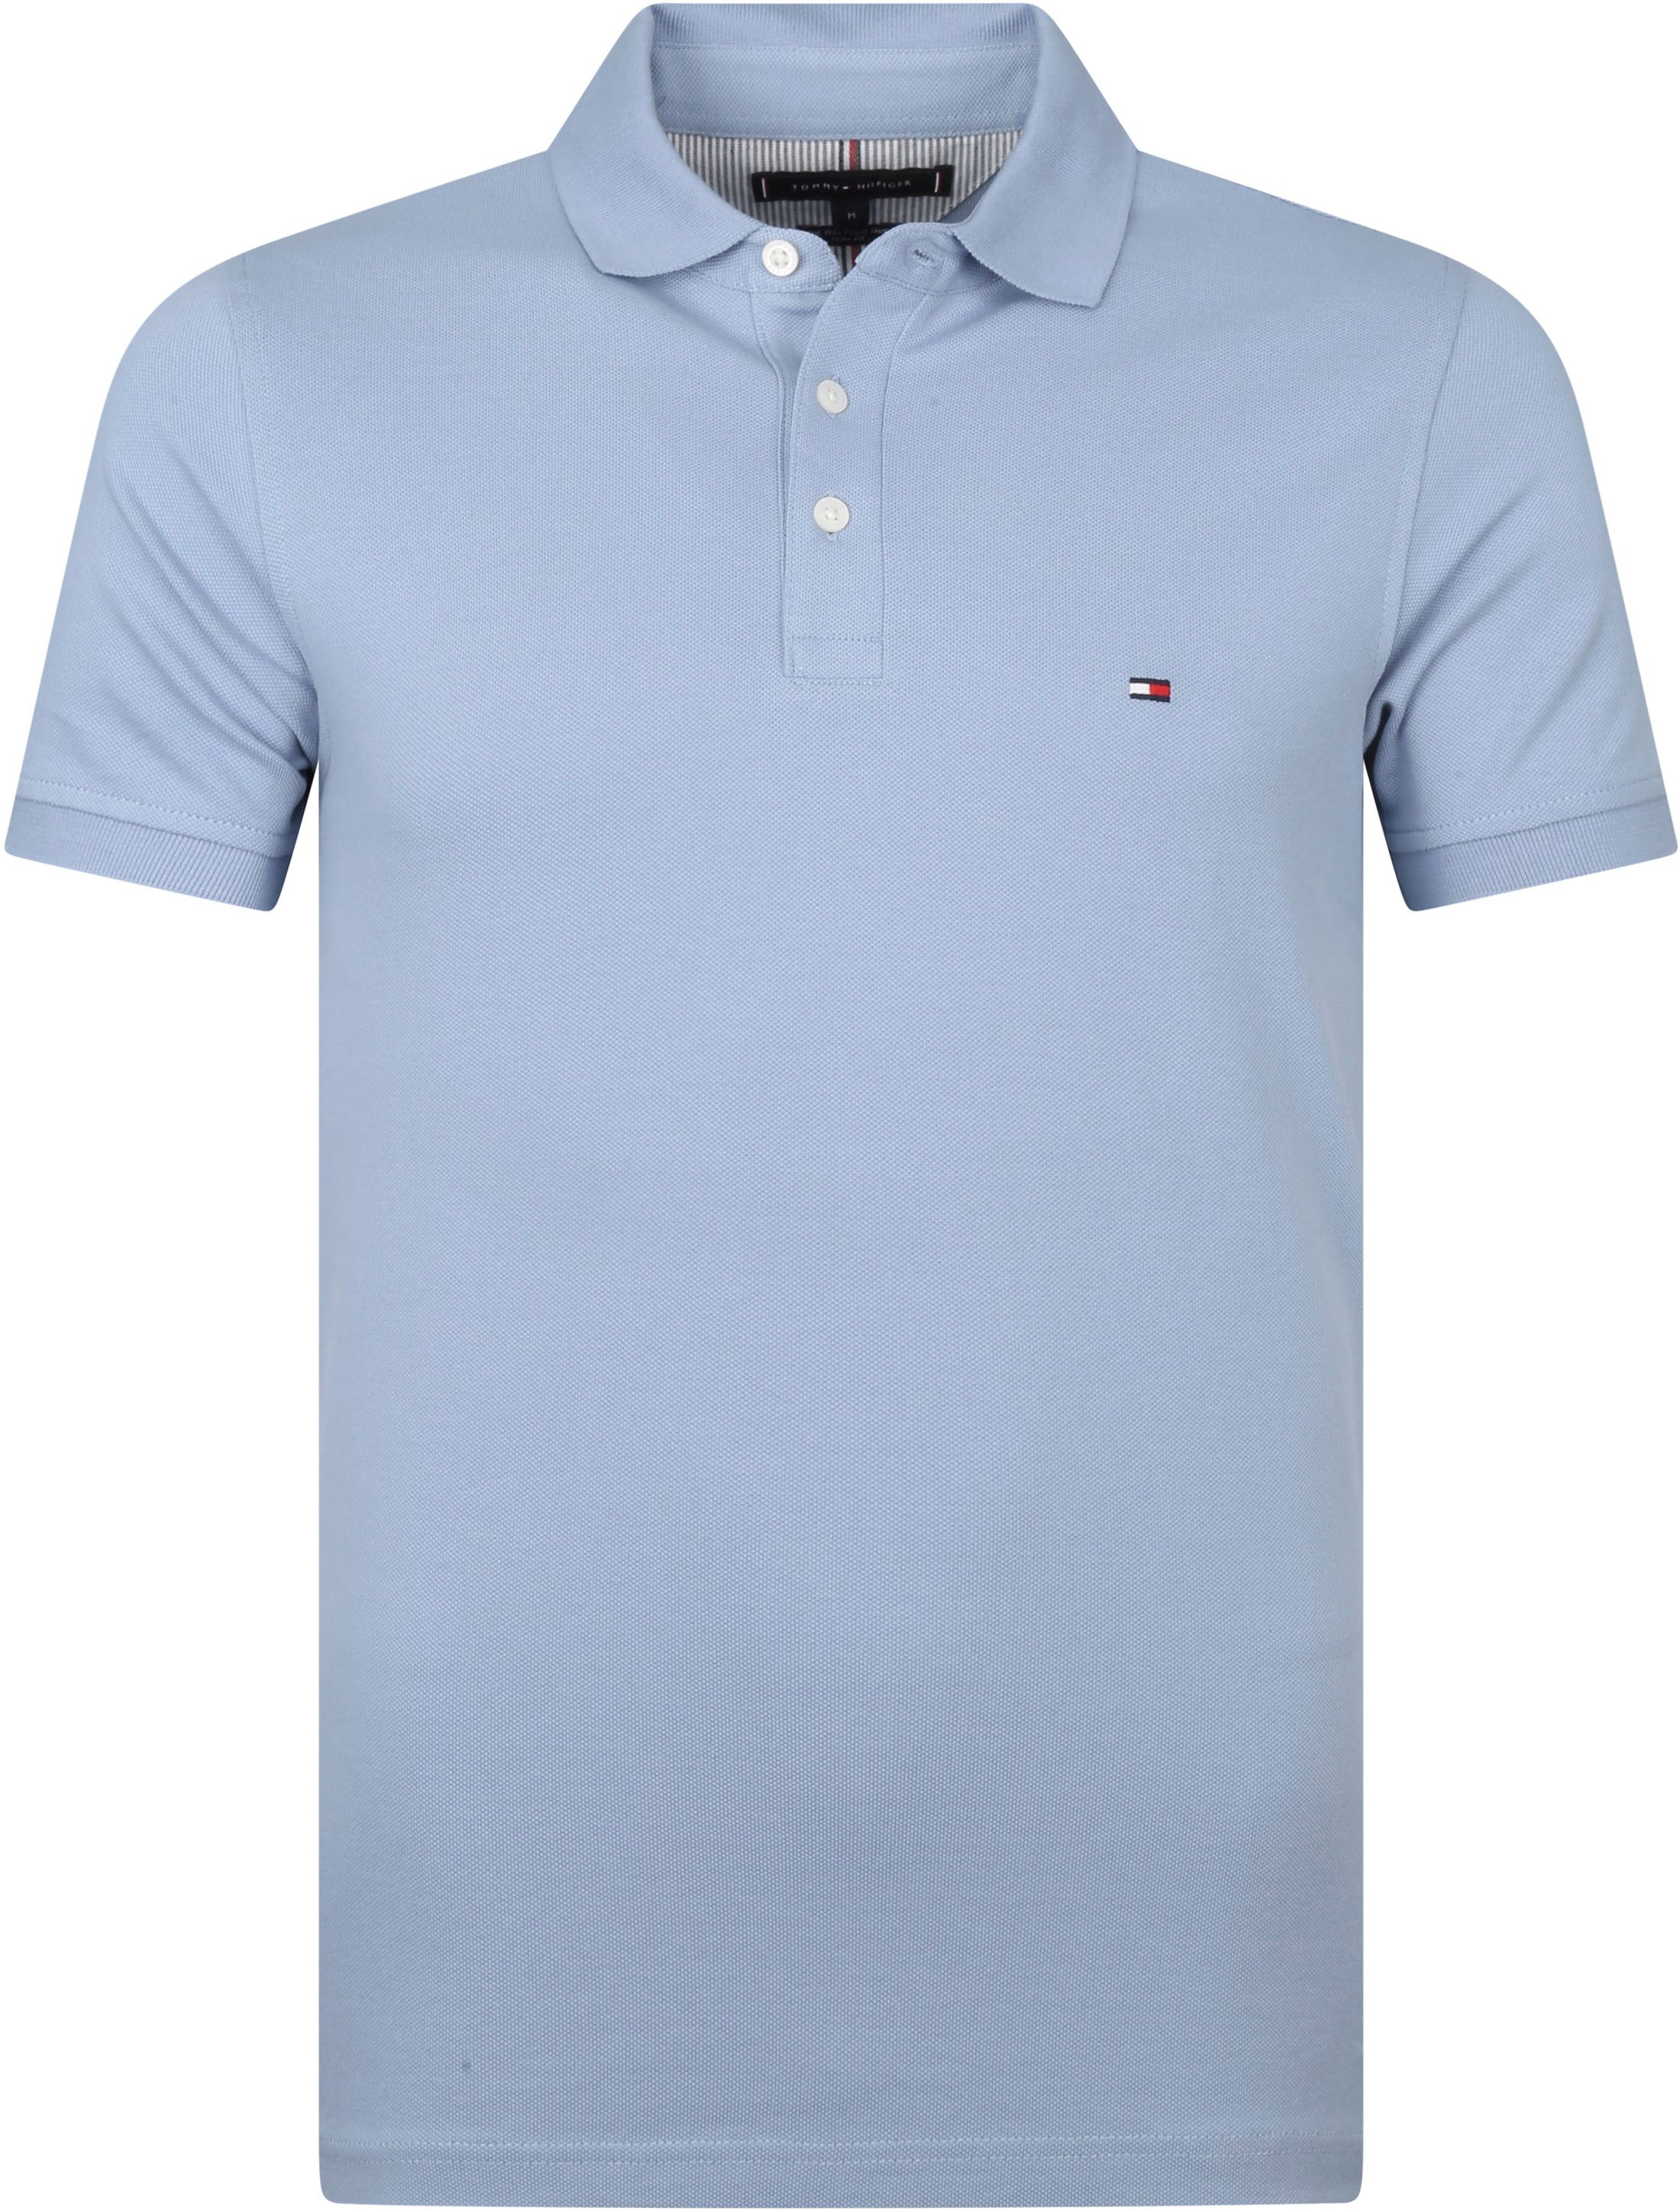 Tommy Hilfiger 1985 Polo Shirt Light Blue size L